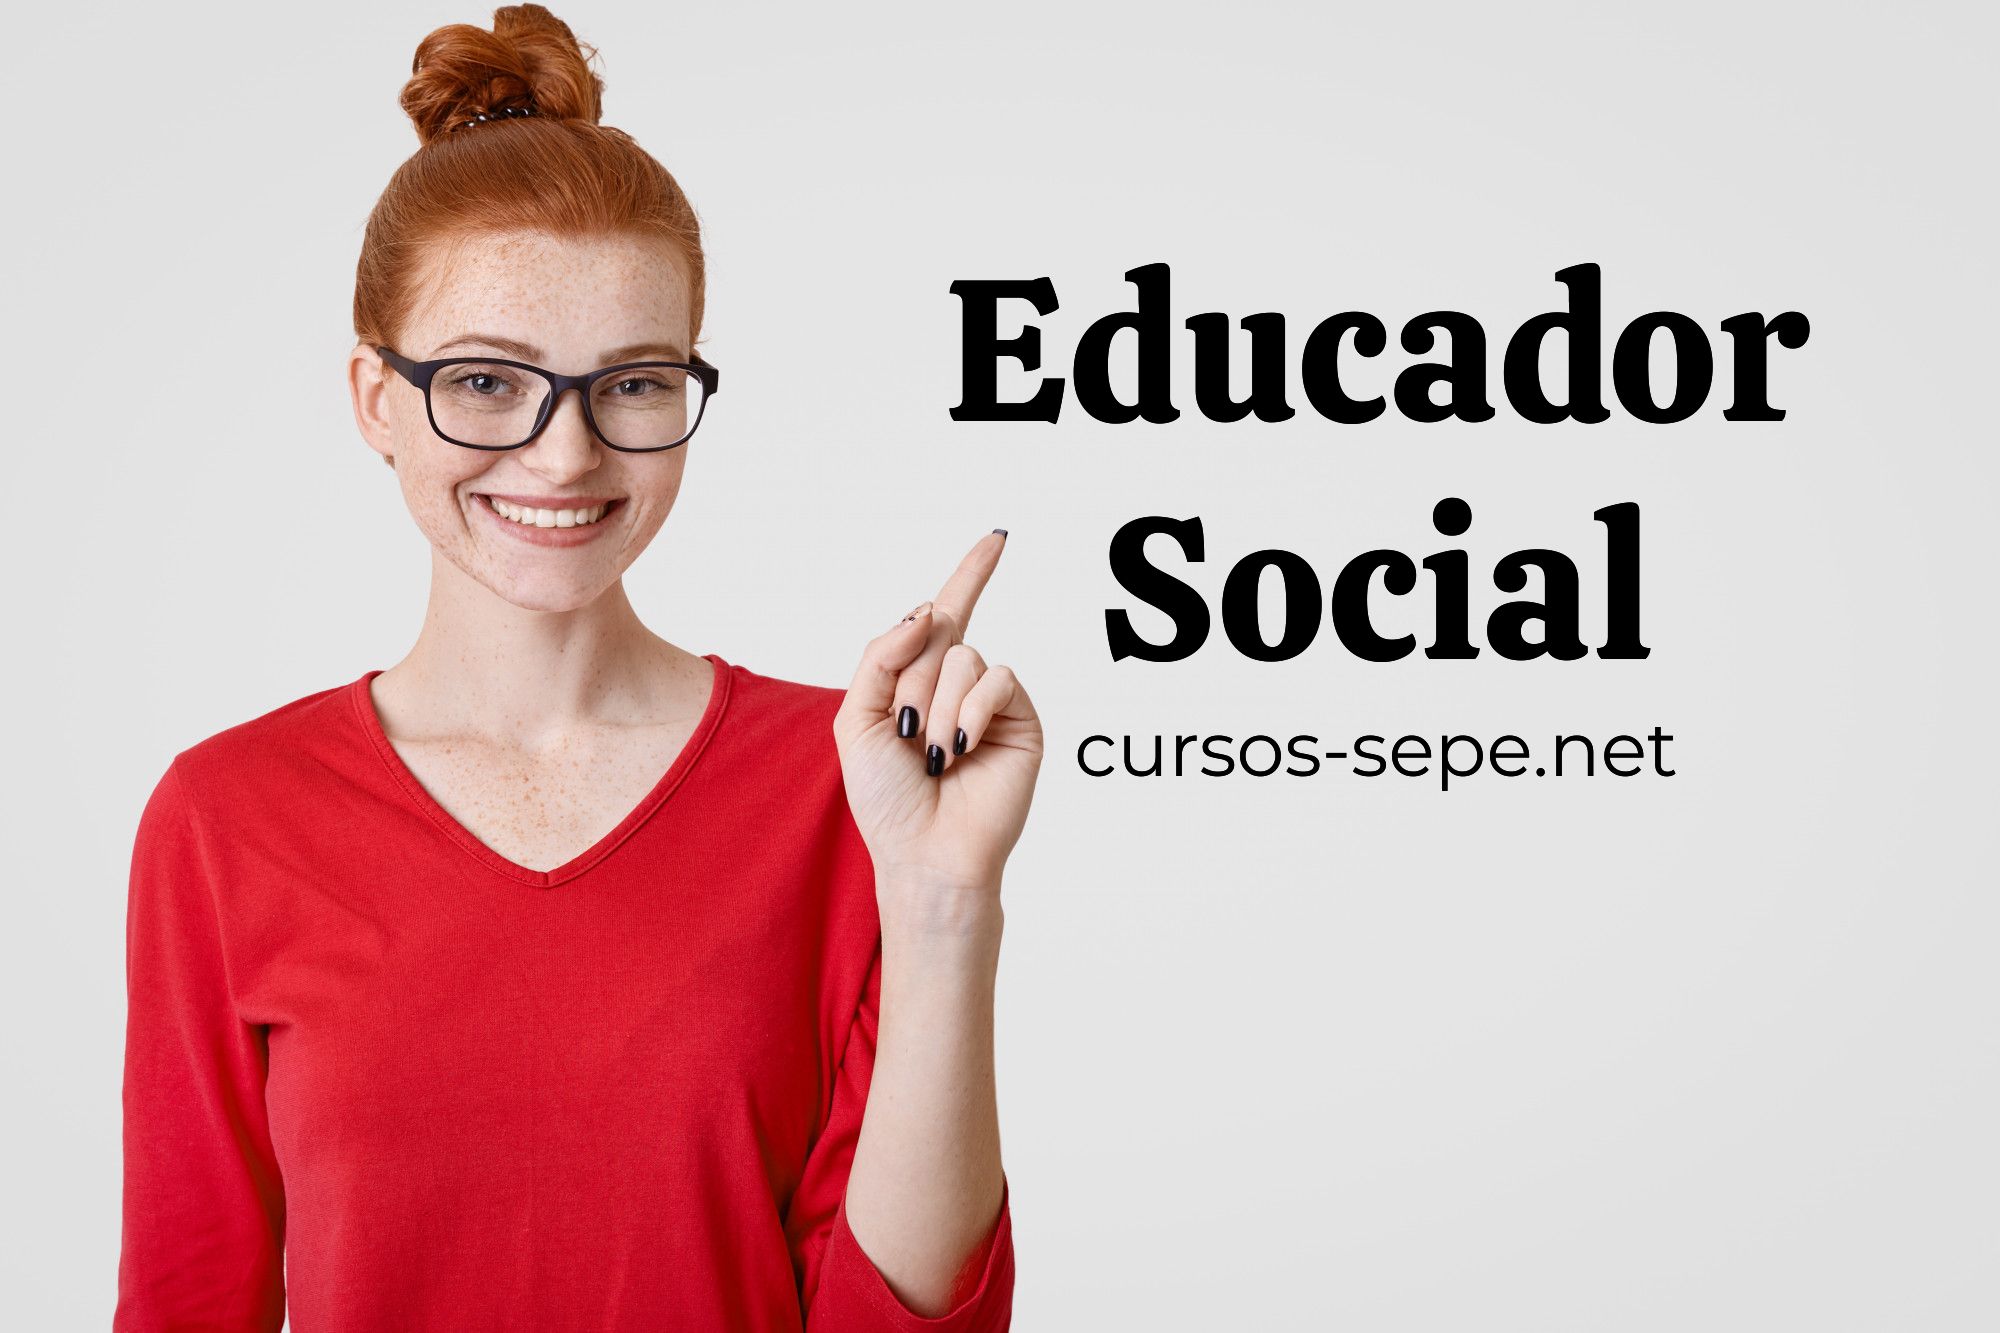 Información sobre cursos y formaciones especificas para ser Educador Social en España.